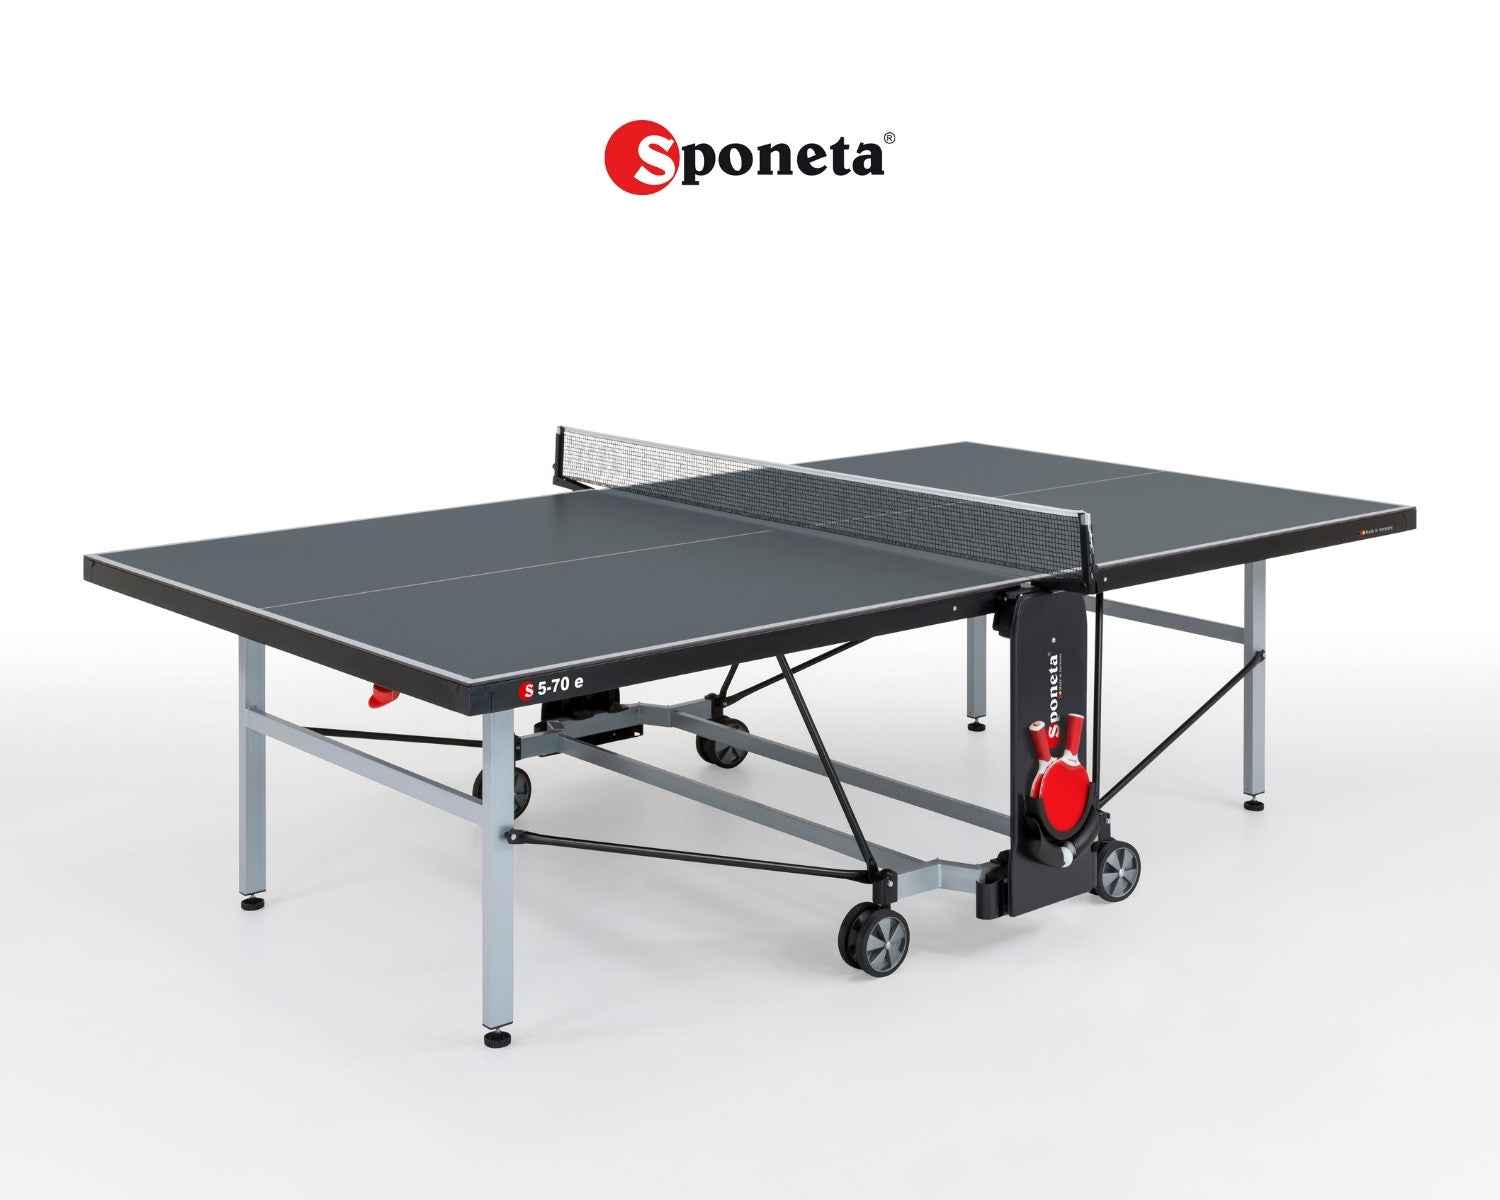 Sponeta Outdoor Tischtennistisch S 5-70 e